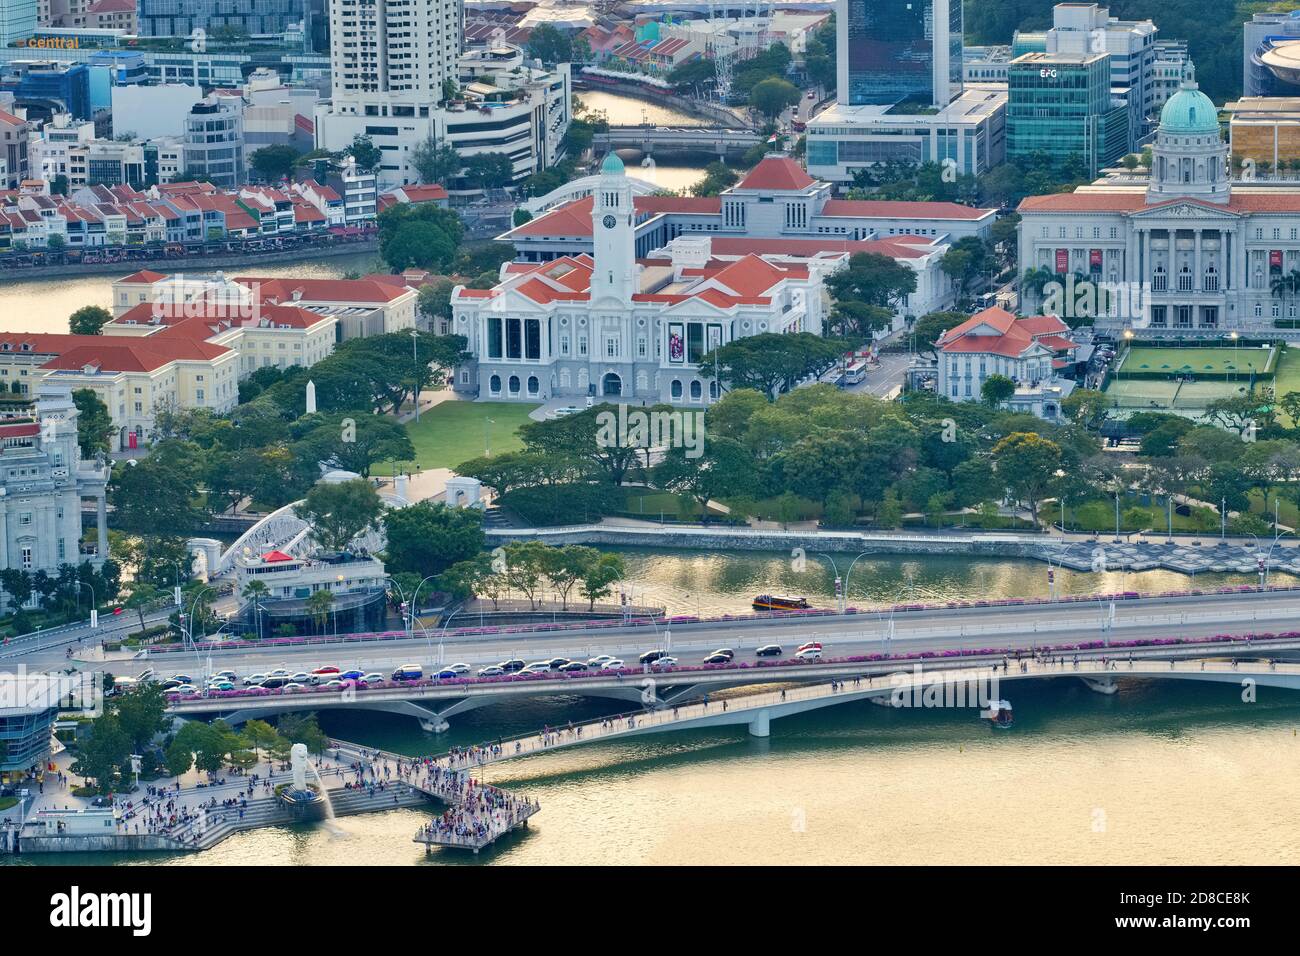 Il vecchio quartiere coloniale di Singapore: (da l a r) Boat Quay, Singapore River, Empress Place, Merlion, Victoria Theatre & Concert Hall, National Gallery Foto Stock